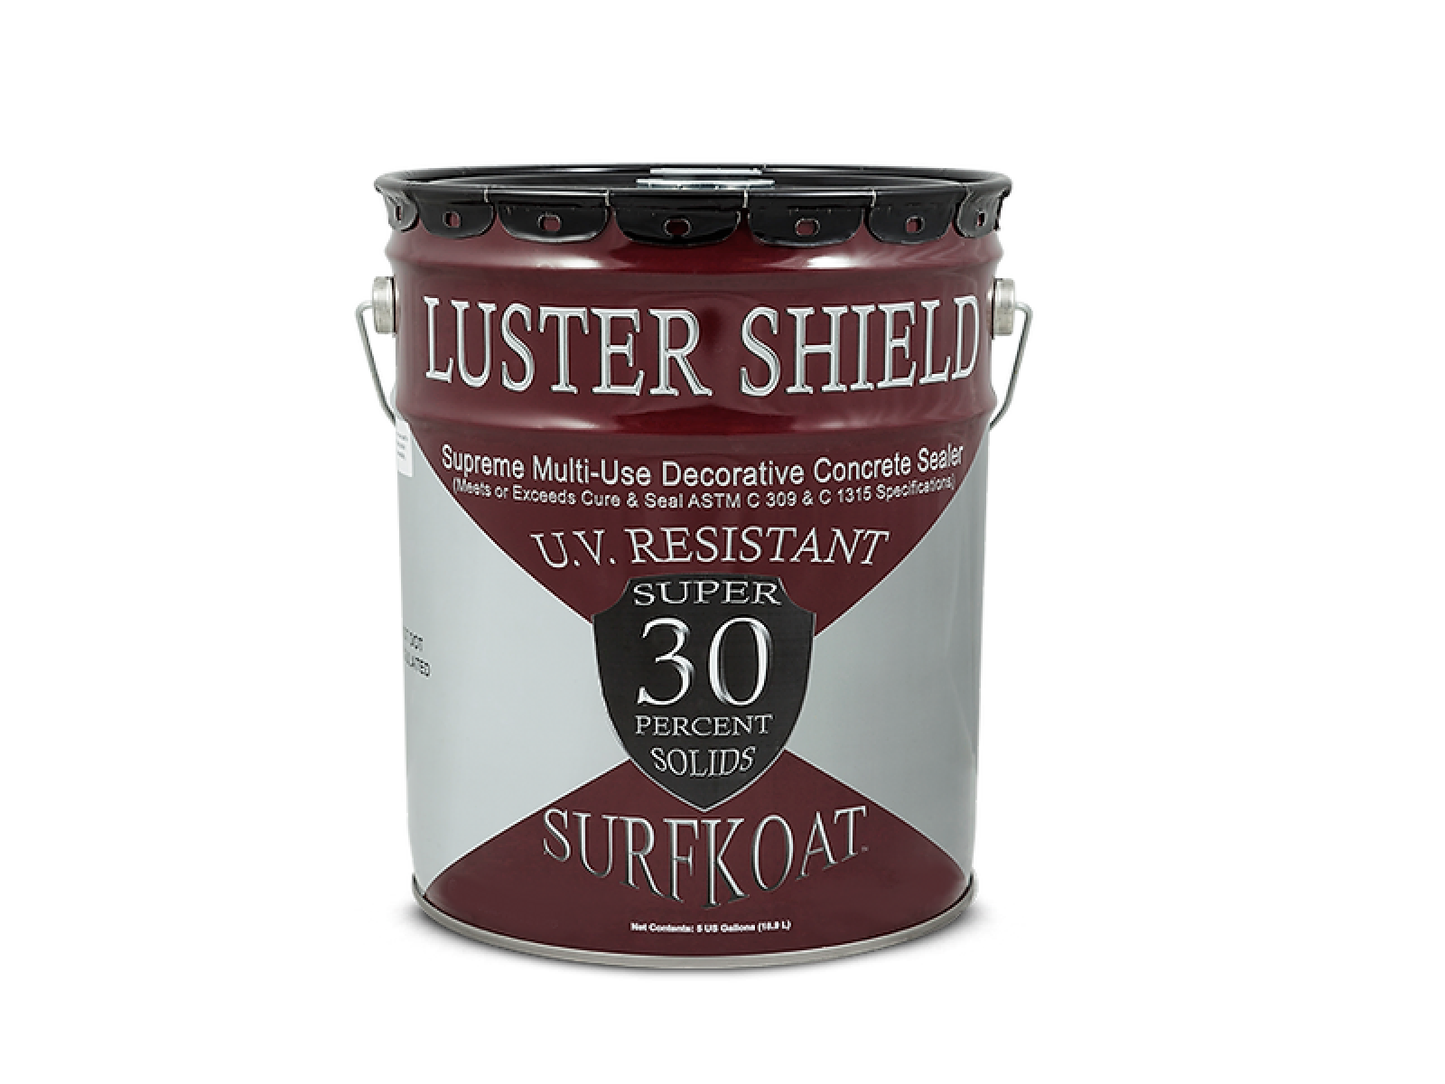 Super Luster Shield 350 VOC 55 Gallon